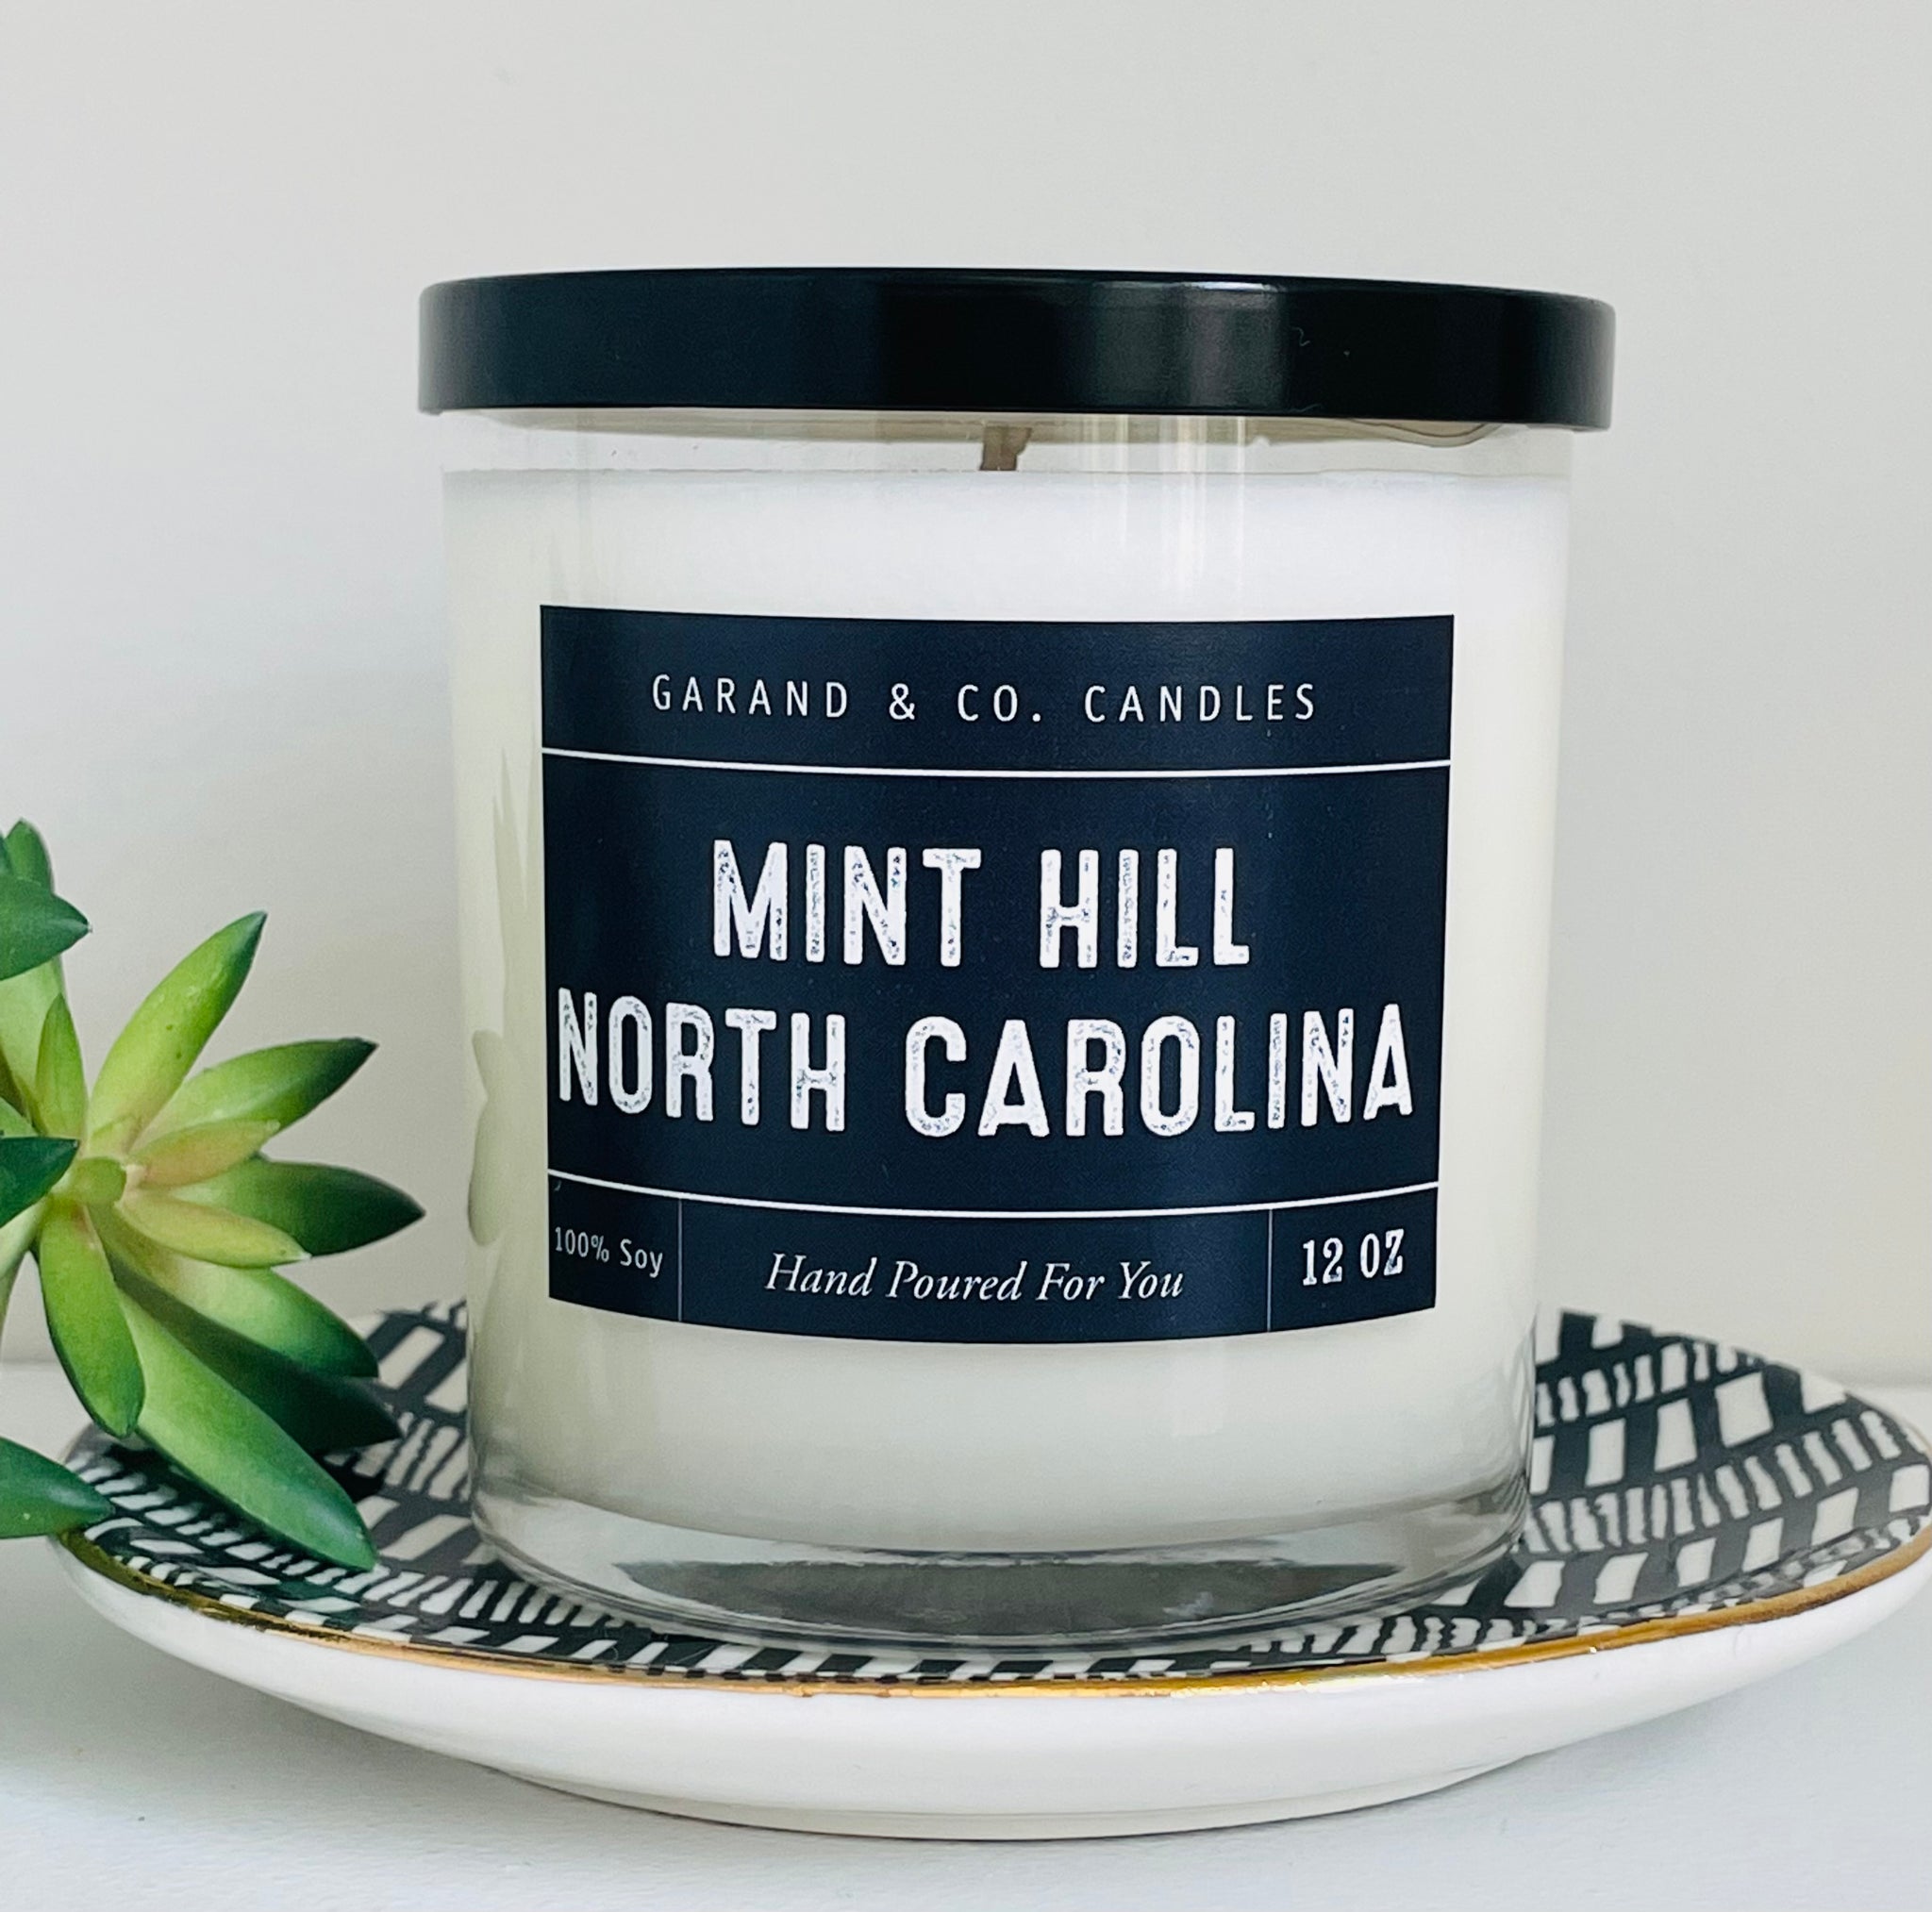 12 oz Clear Glass Jar Candle - Mint Hill, North Carolina